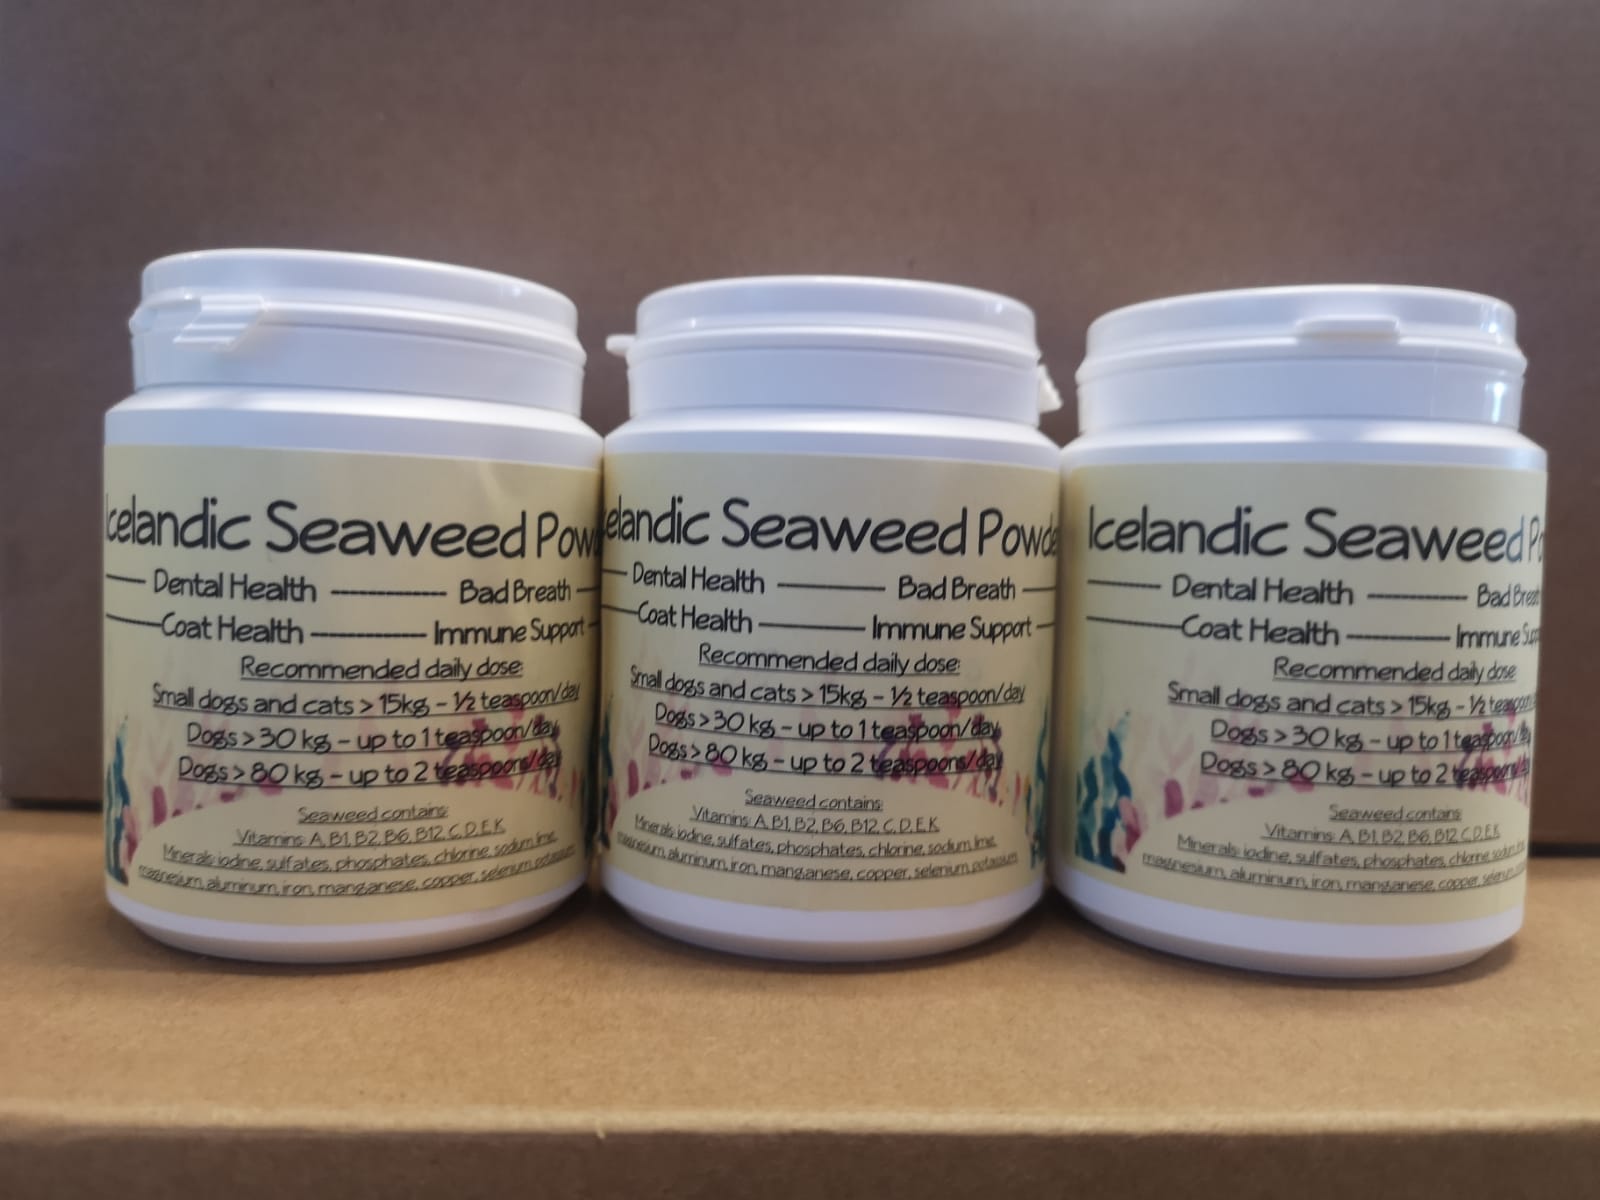 Icelandic Seaweed Powder